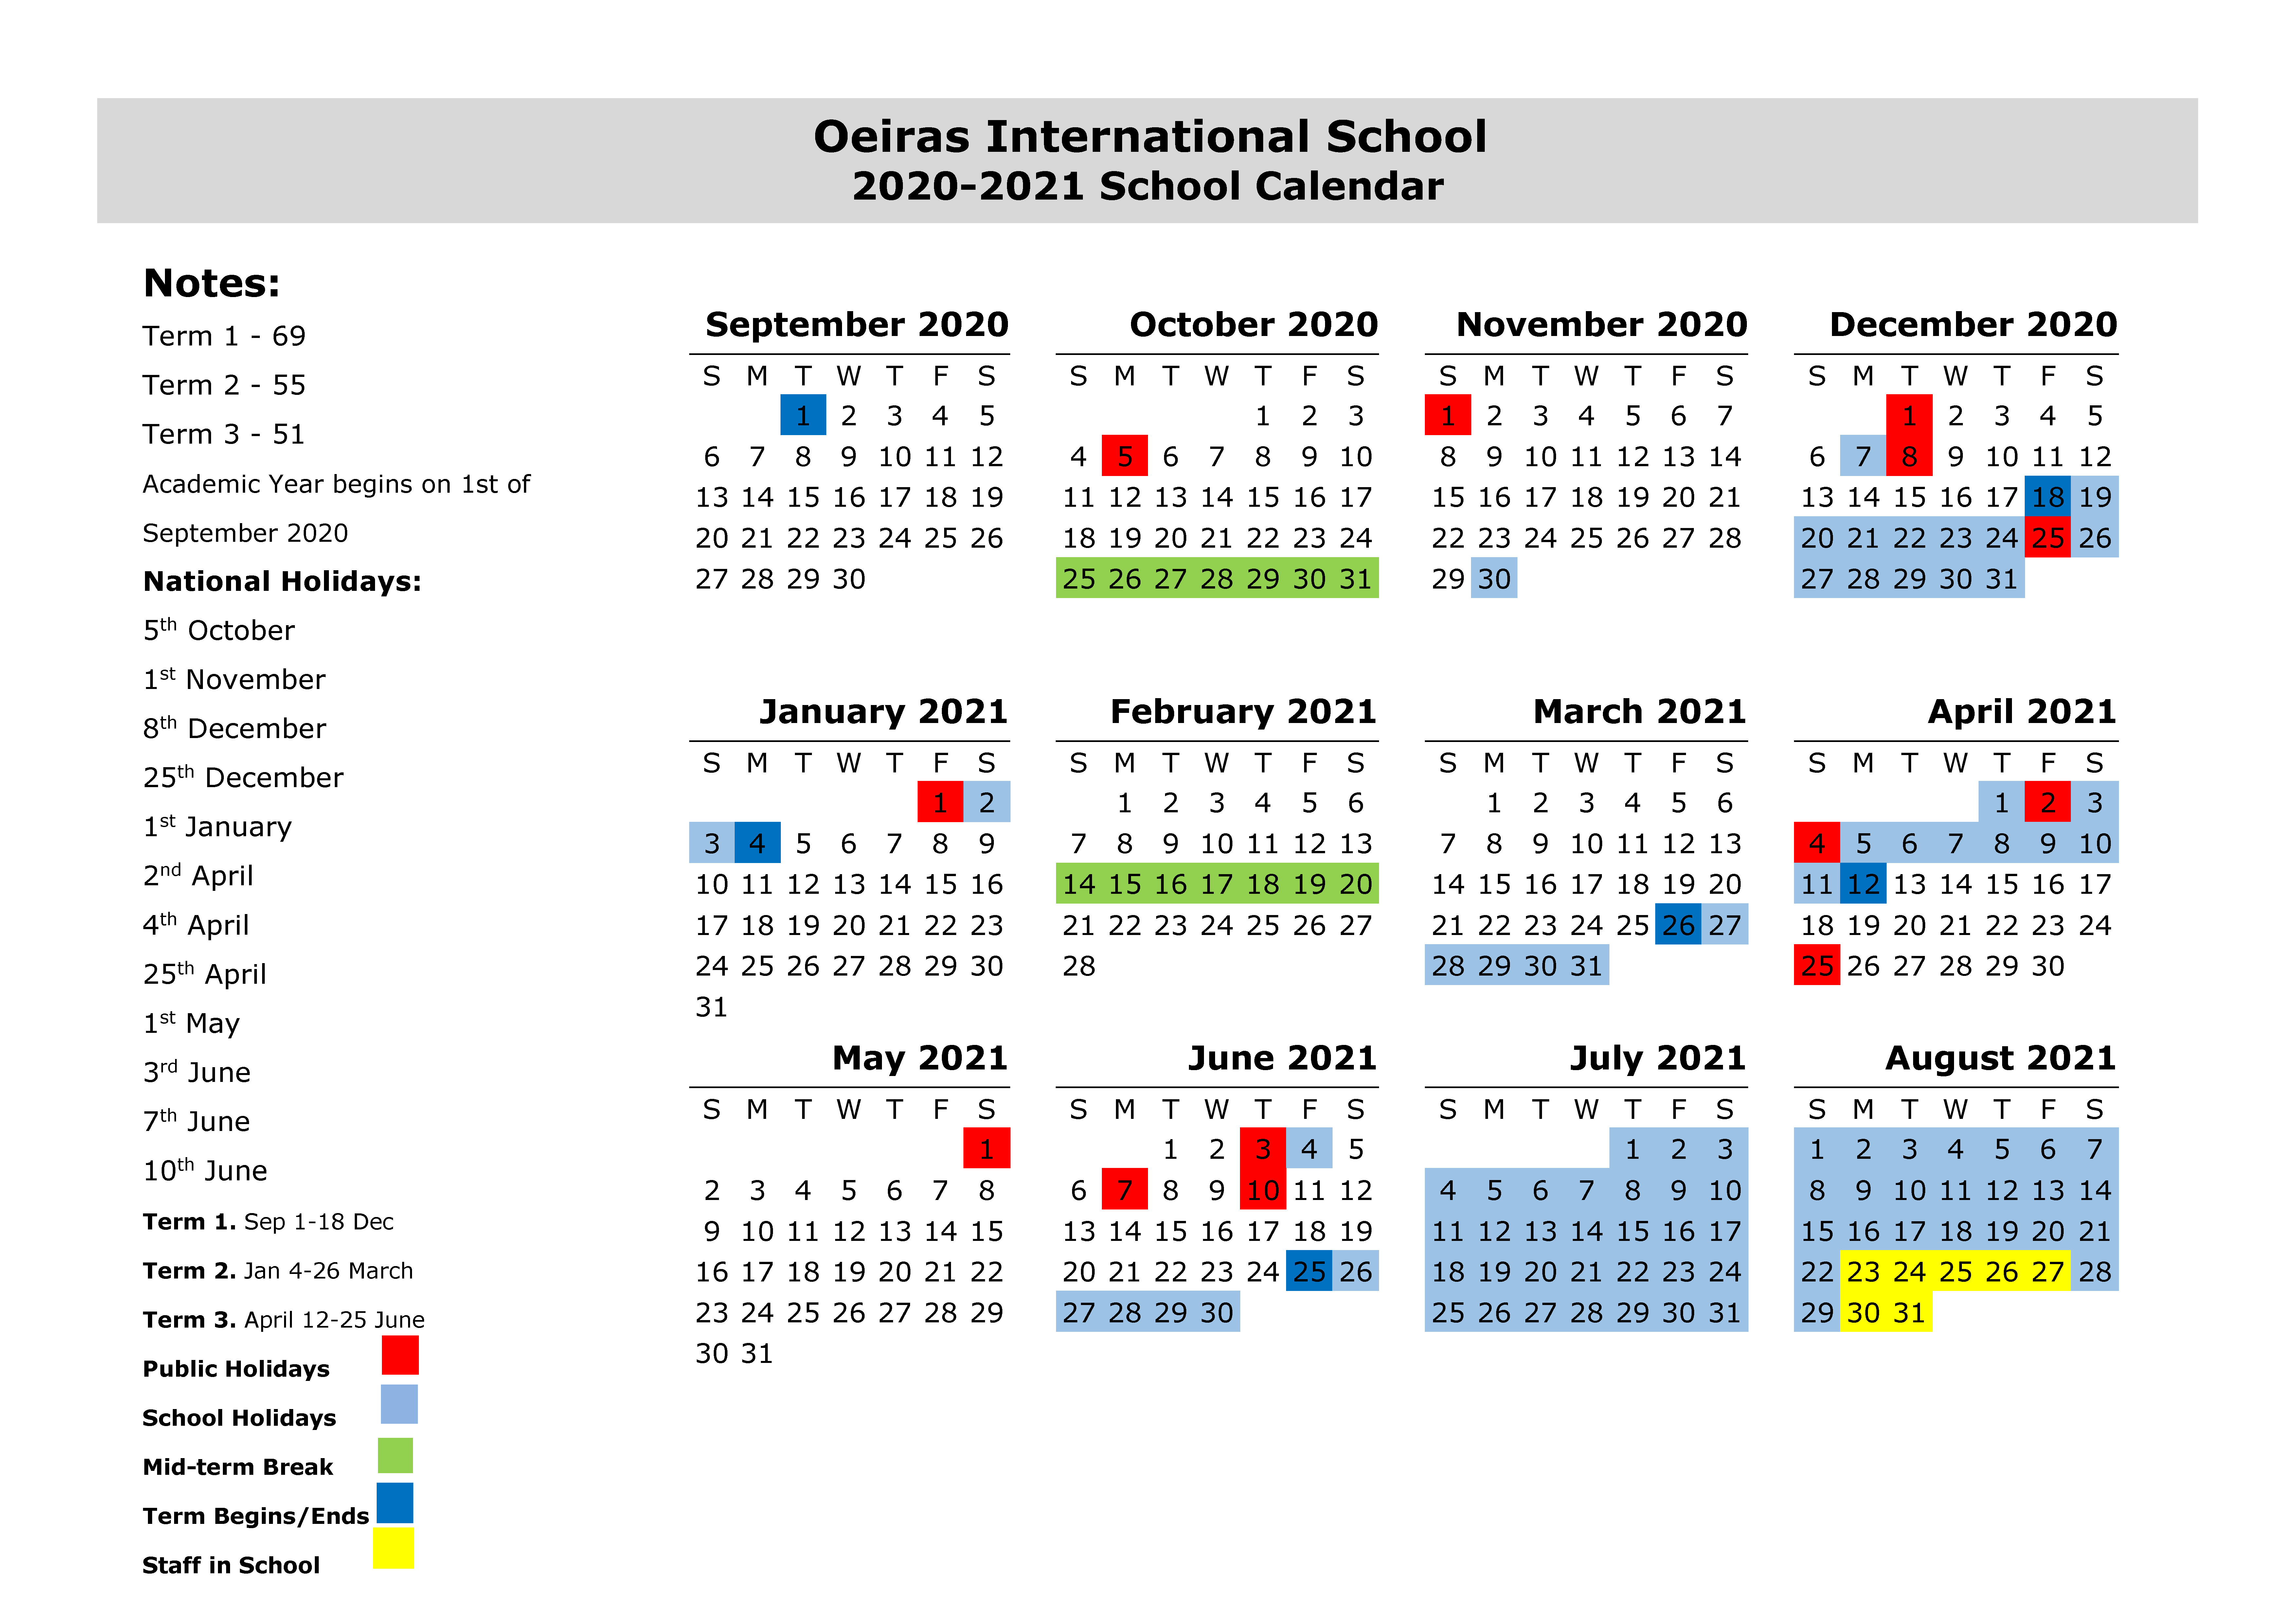 Ois School Calendar 201920 – Oeiras International School with Oeiras International School Calendar